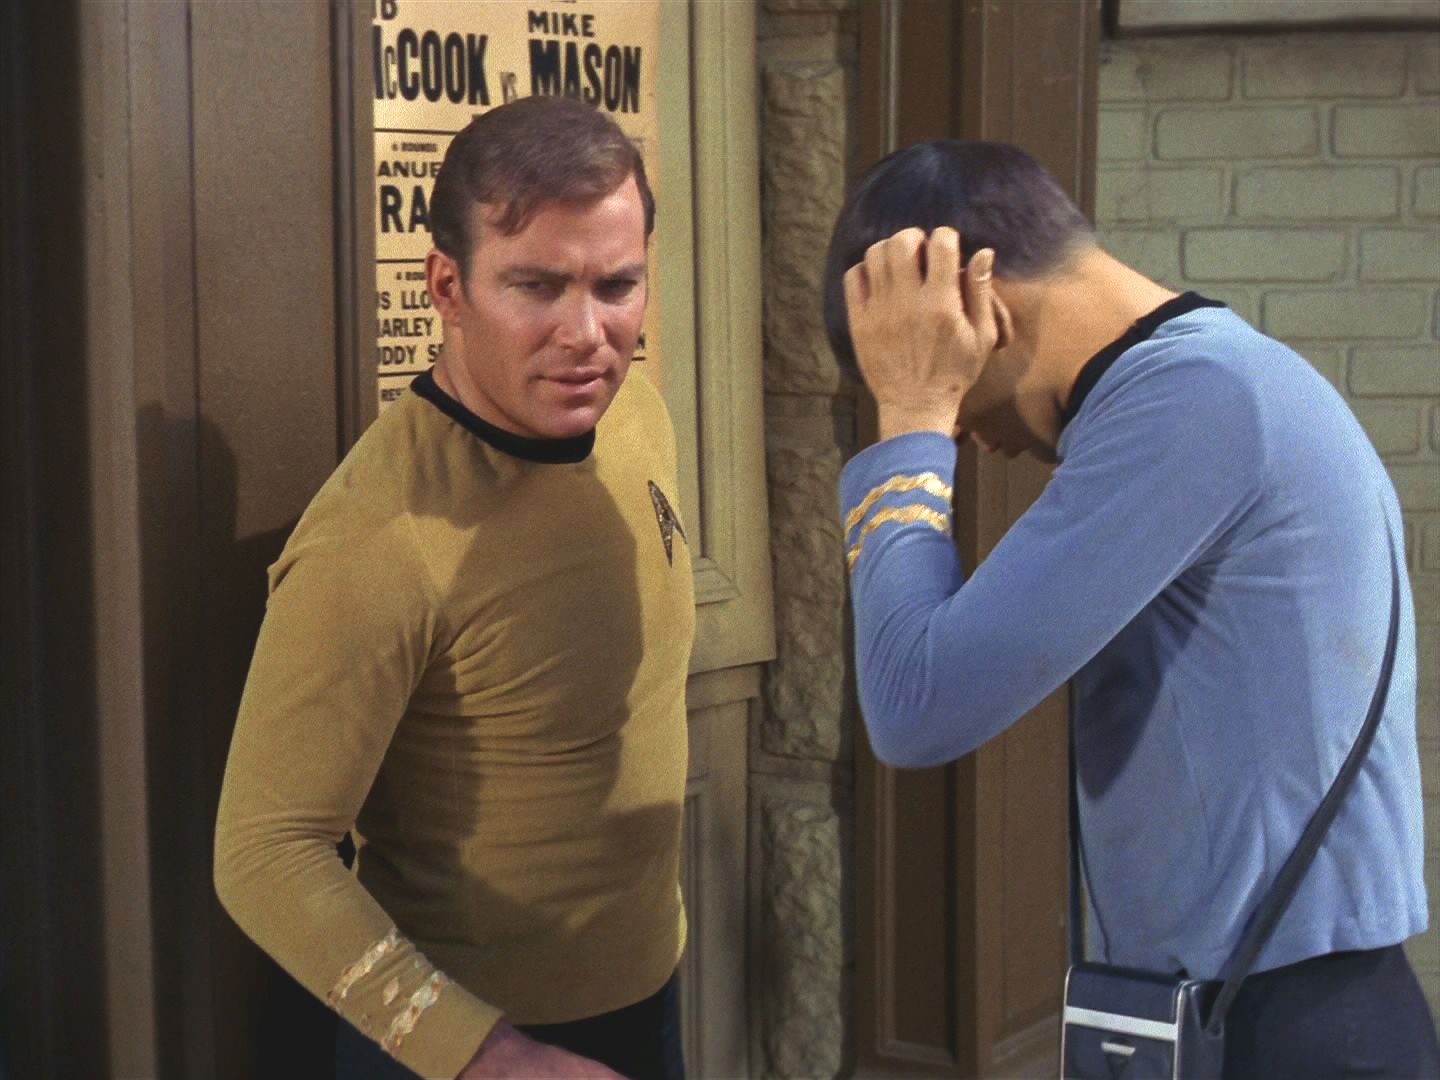 Pak zmizela Enterprise a veškeré známé signály. Doktor v minulosti něco fatálně změnil. Kirk a Spock se Strážcem věčnosti musí vydat za ním. Ocitli se v New Yorku v roce 1930.